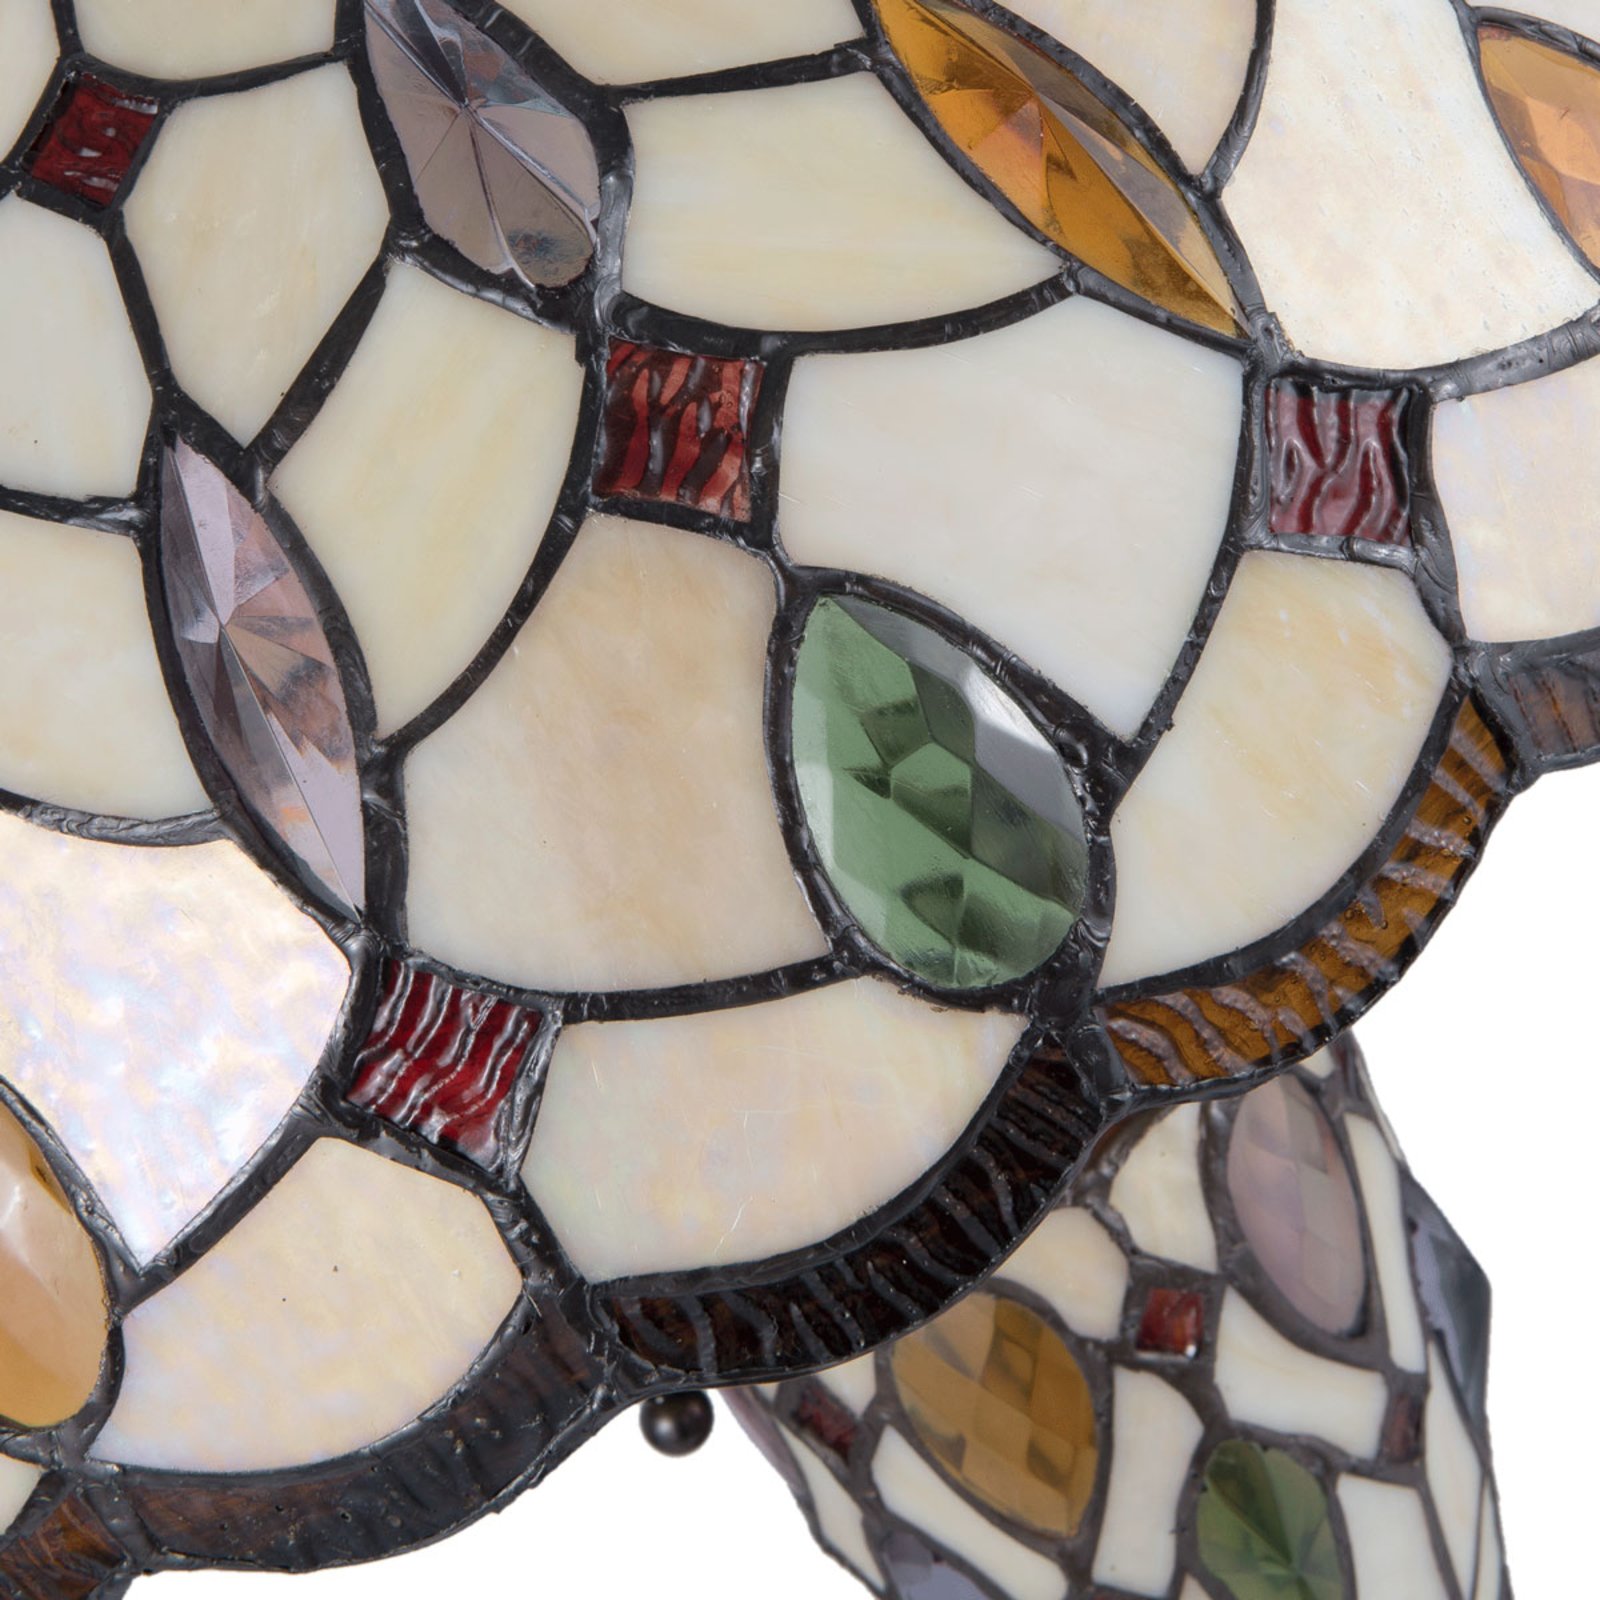 Stolná lampa 5182 farebné, tienidlo sklo Tiffany